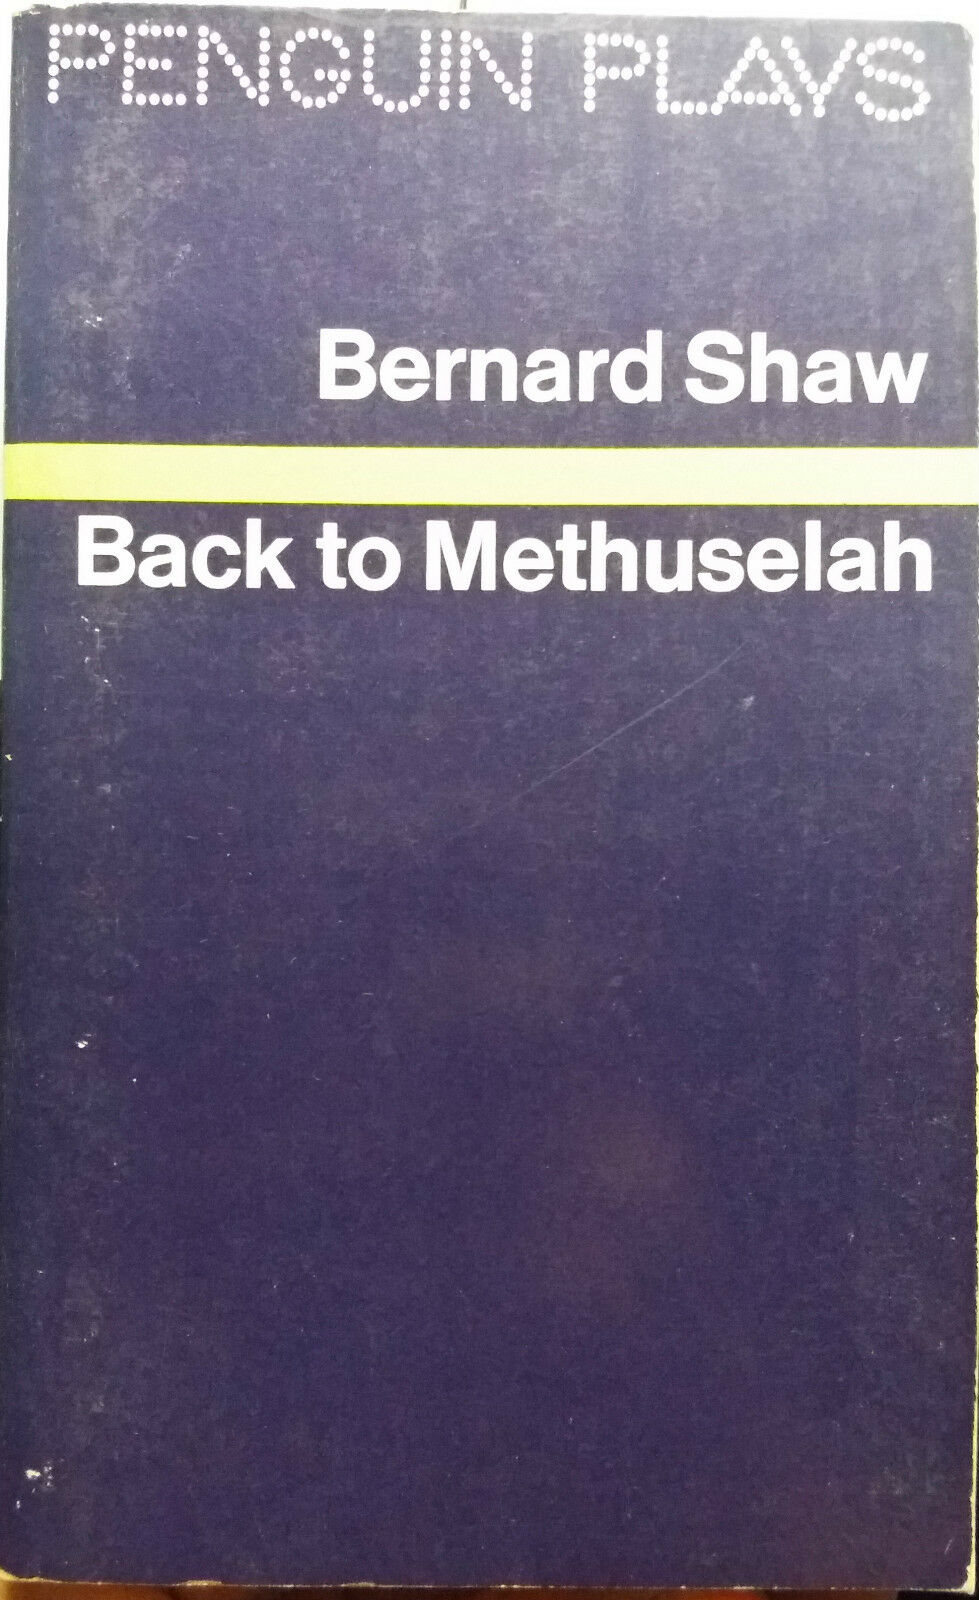 Back to Methuselah - Bernard Shaw - Penguin Books - 1971 - G